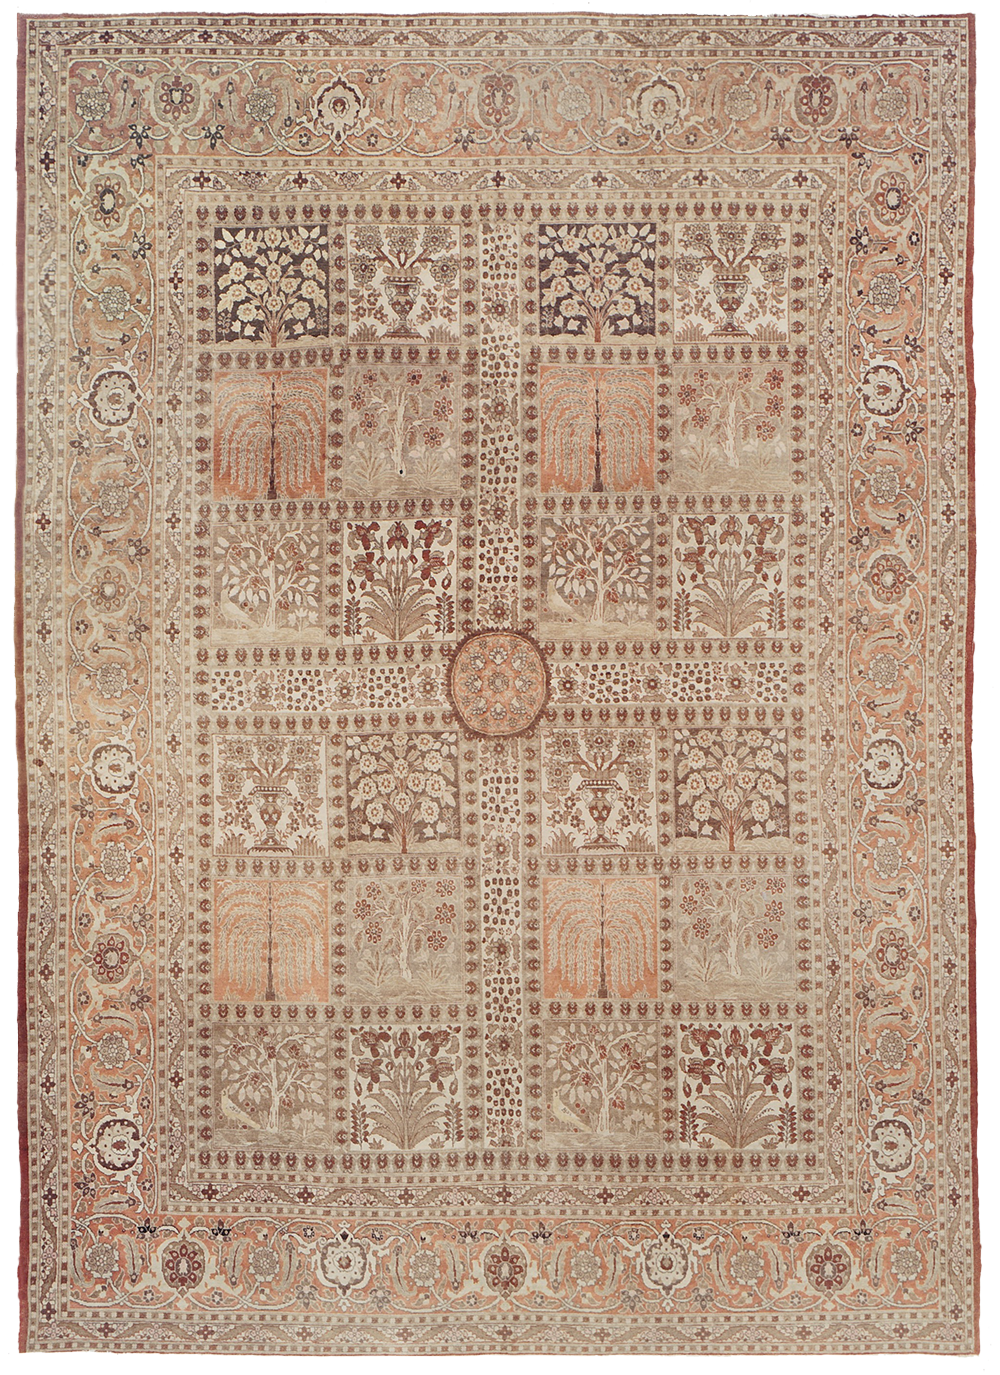 Garden Tabriz carpet